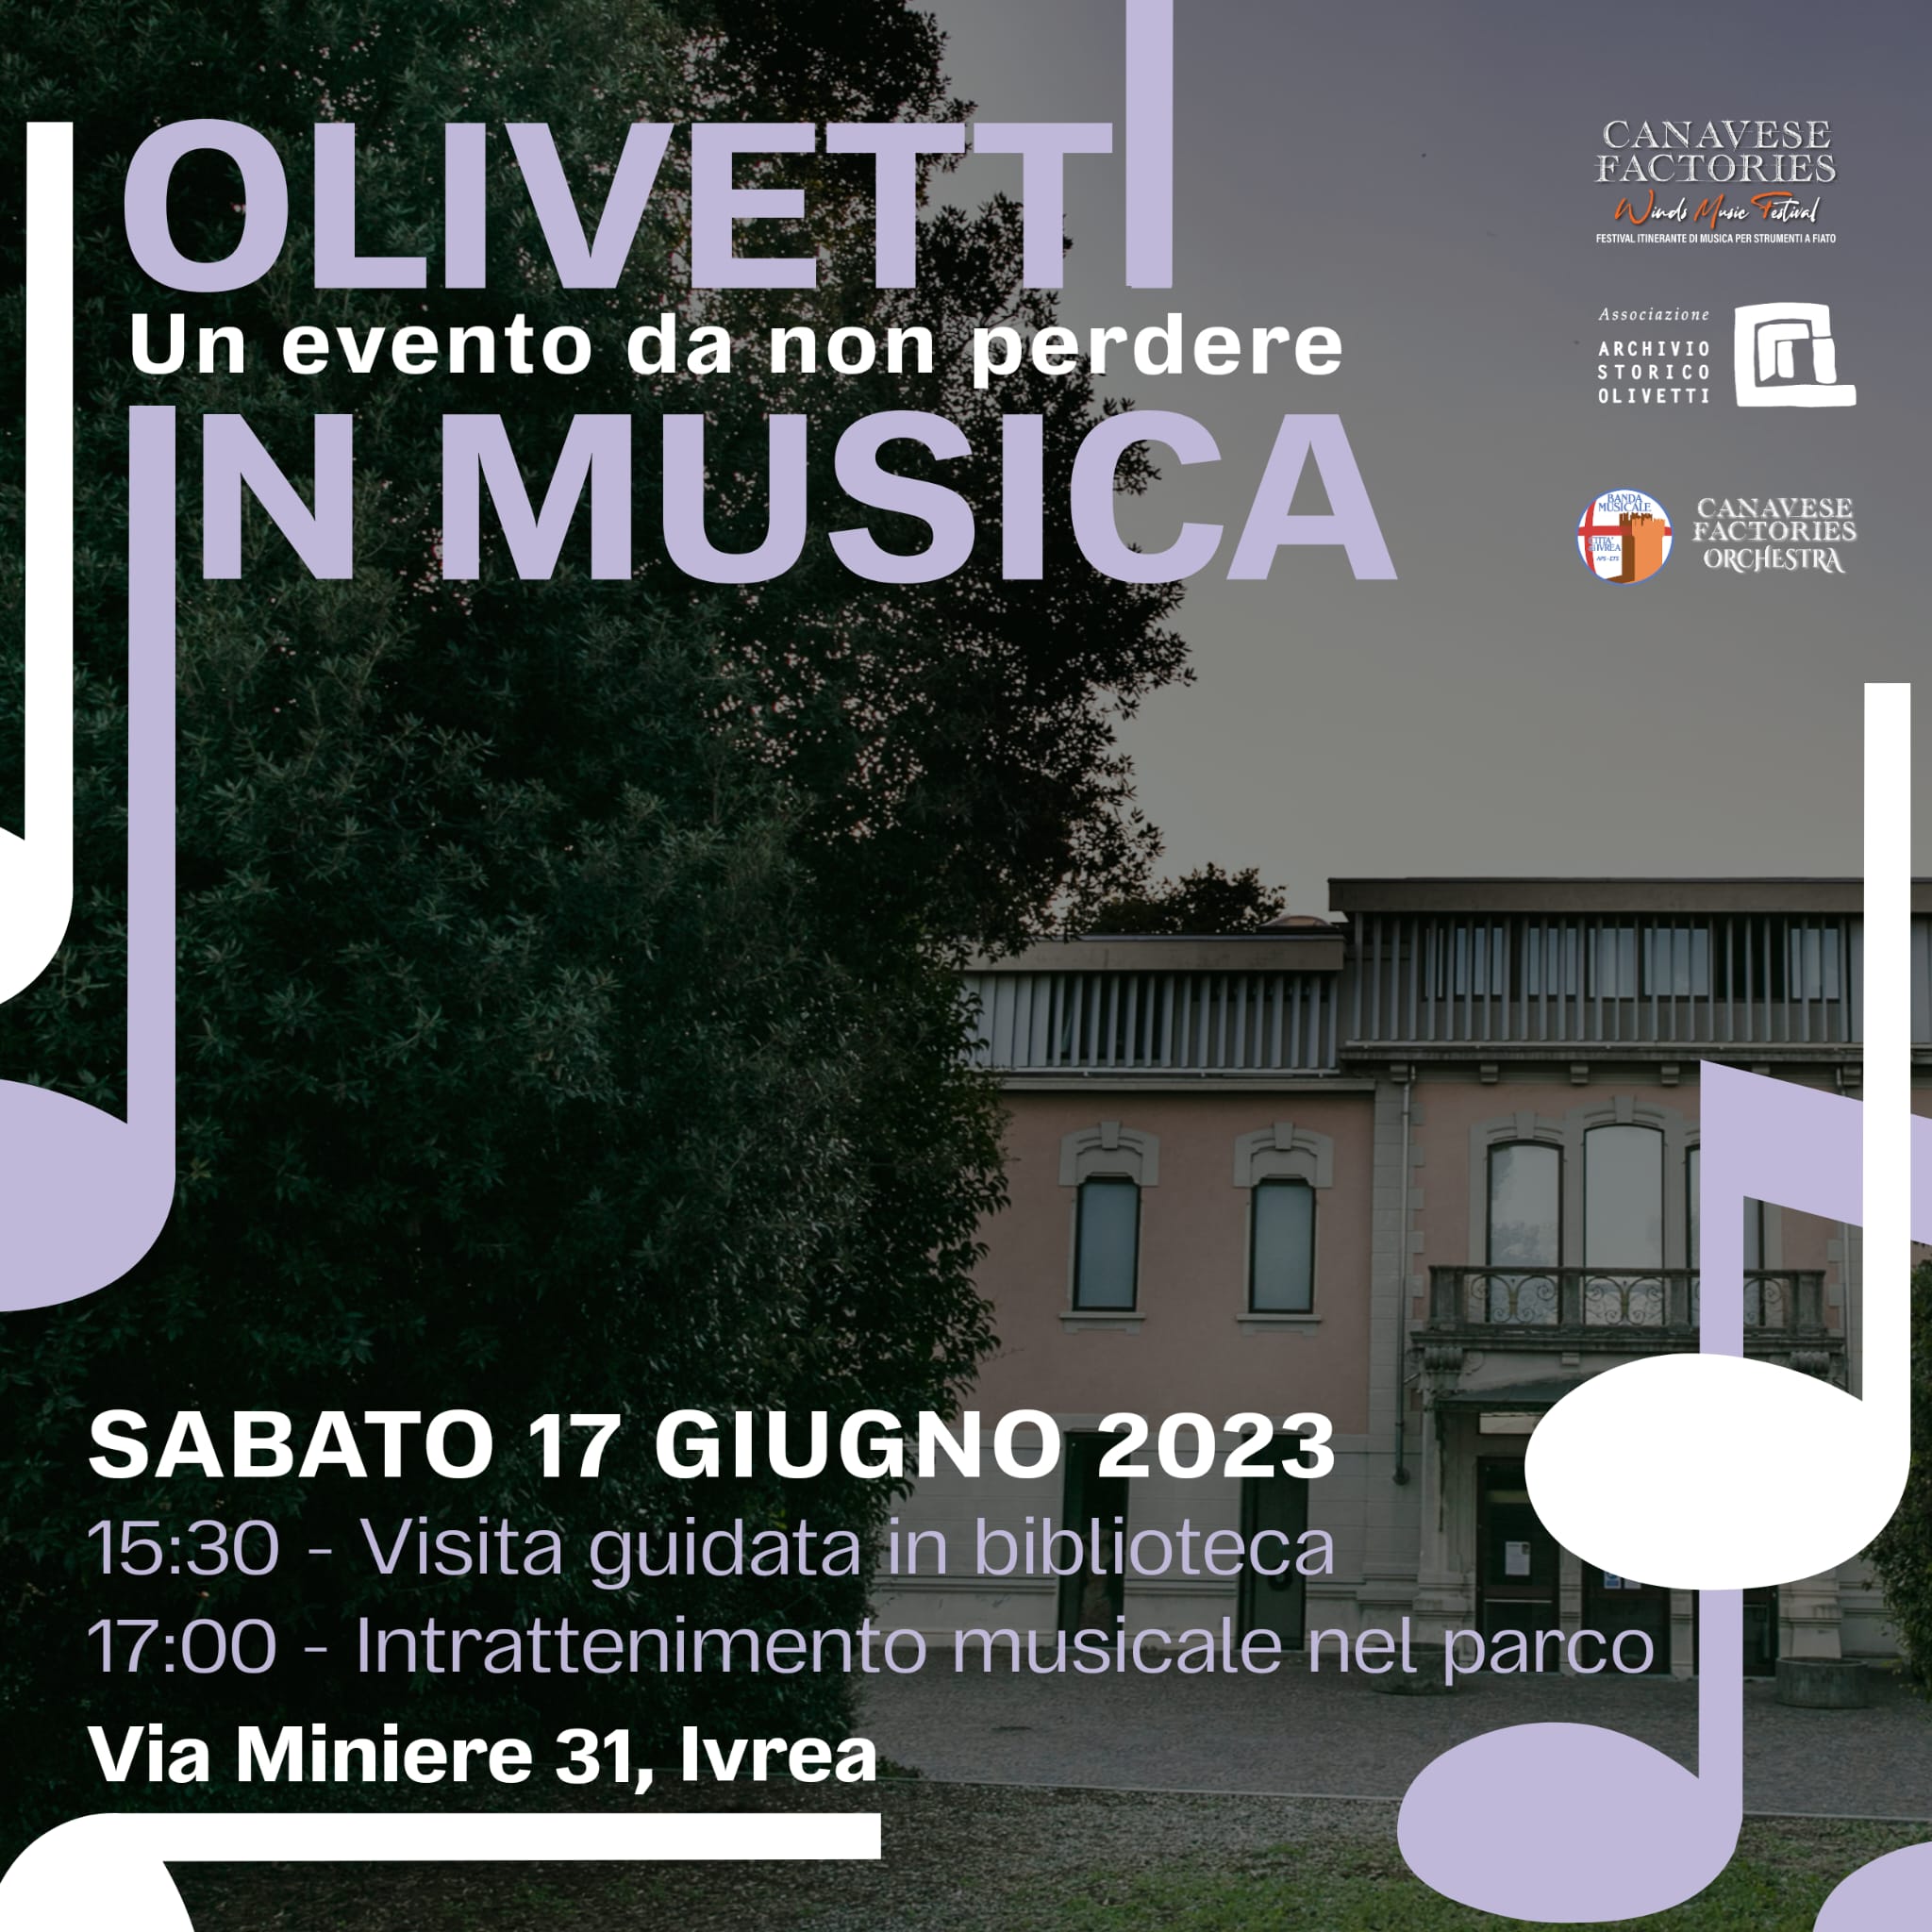 Olivetti in musica